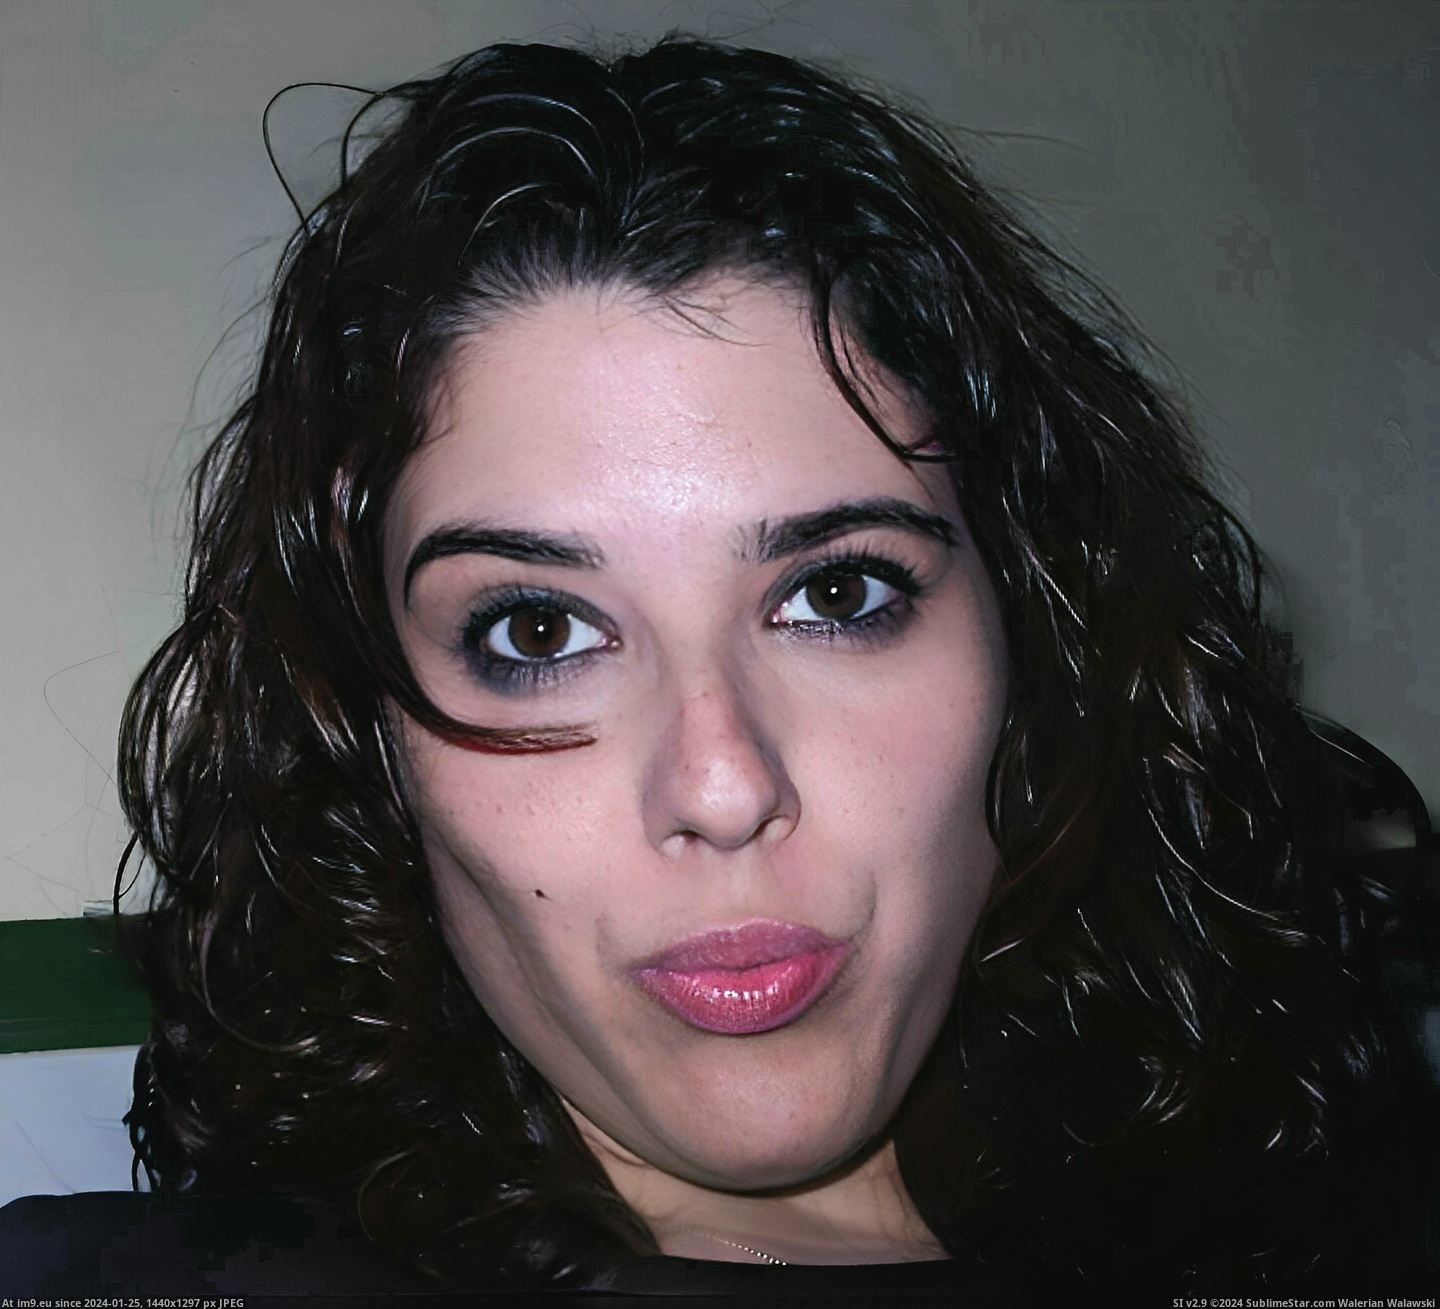 #Photo #Naked #Facial #Samyresident #Cumtarget #Bitch #Latina #Target Bitch latina facial target Pic. (Bild von album Instant Upload))